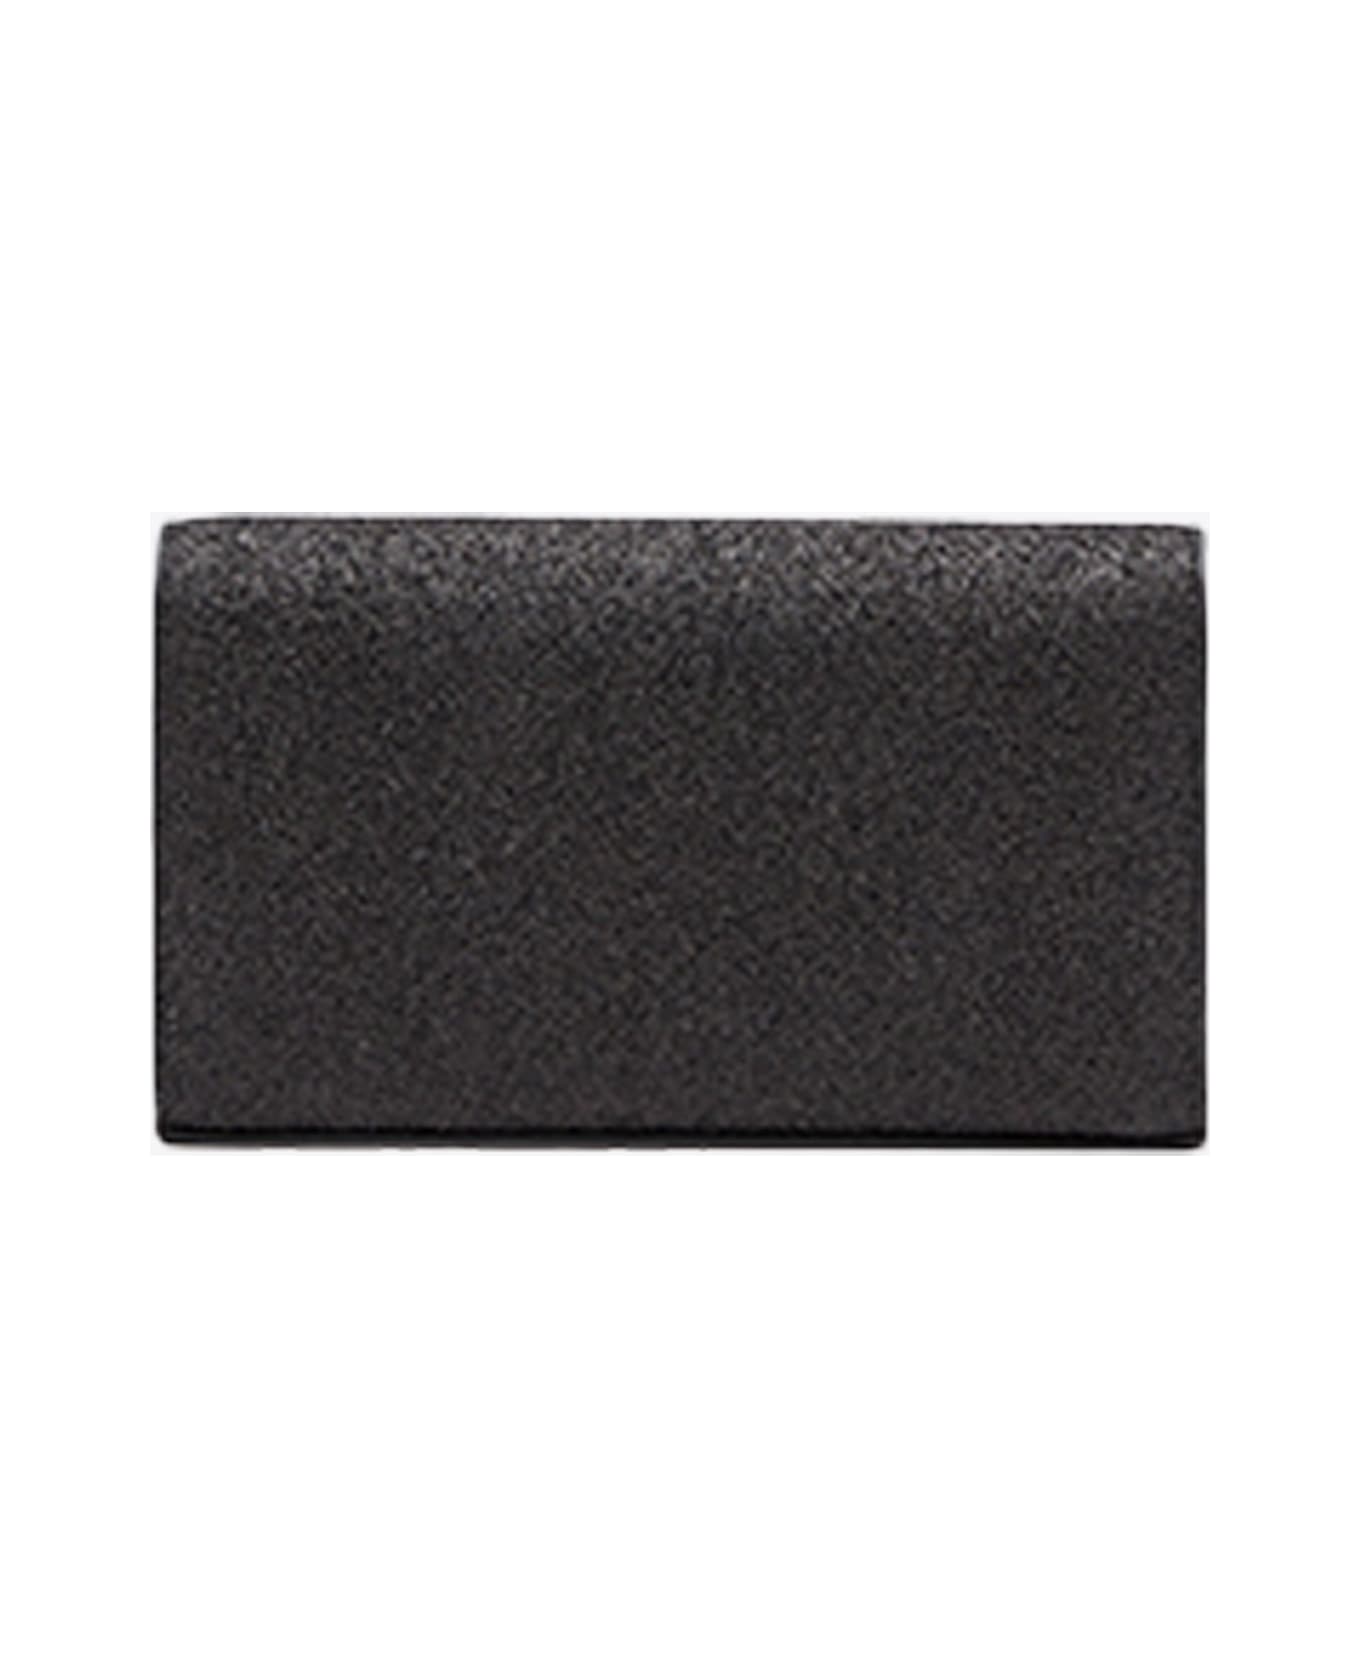 Diesel 1dr 1dr Wallet Strap Sparkly Black Purse With Shoulder Strap - 1dr Wallet Strap - Nero